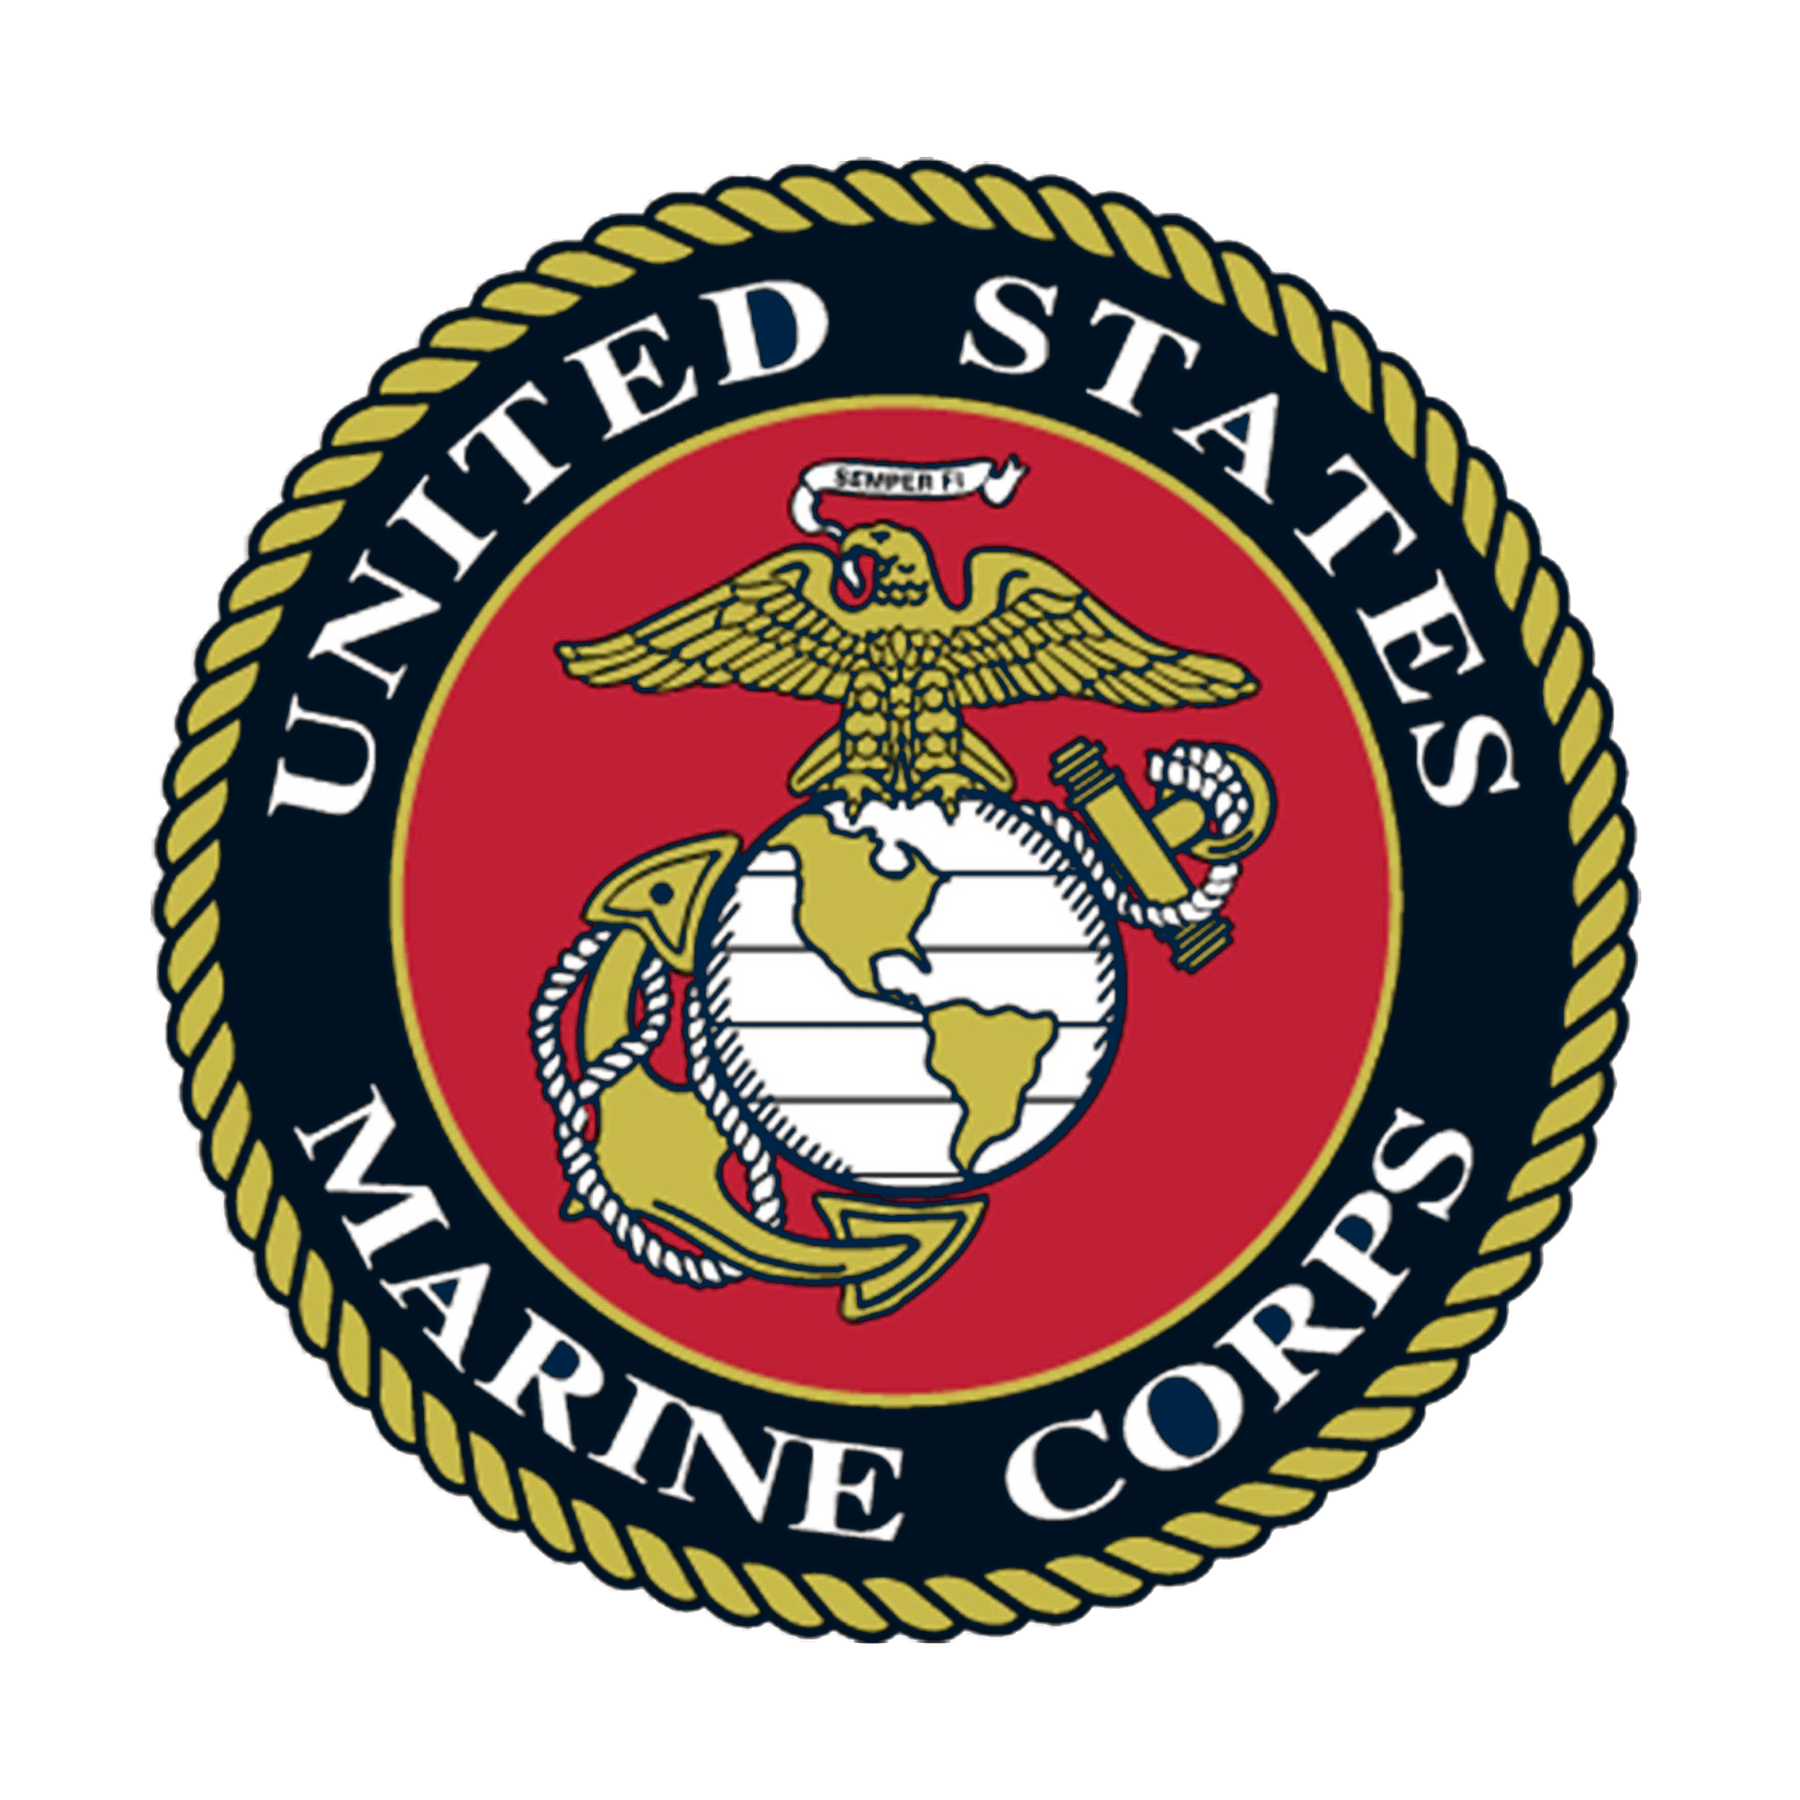 Classic Marine Corps 2-Sided Tee